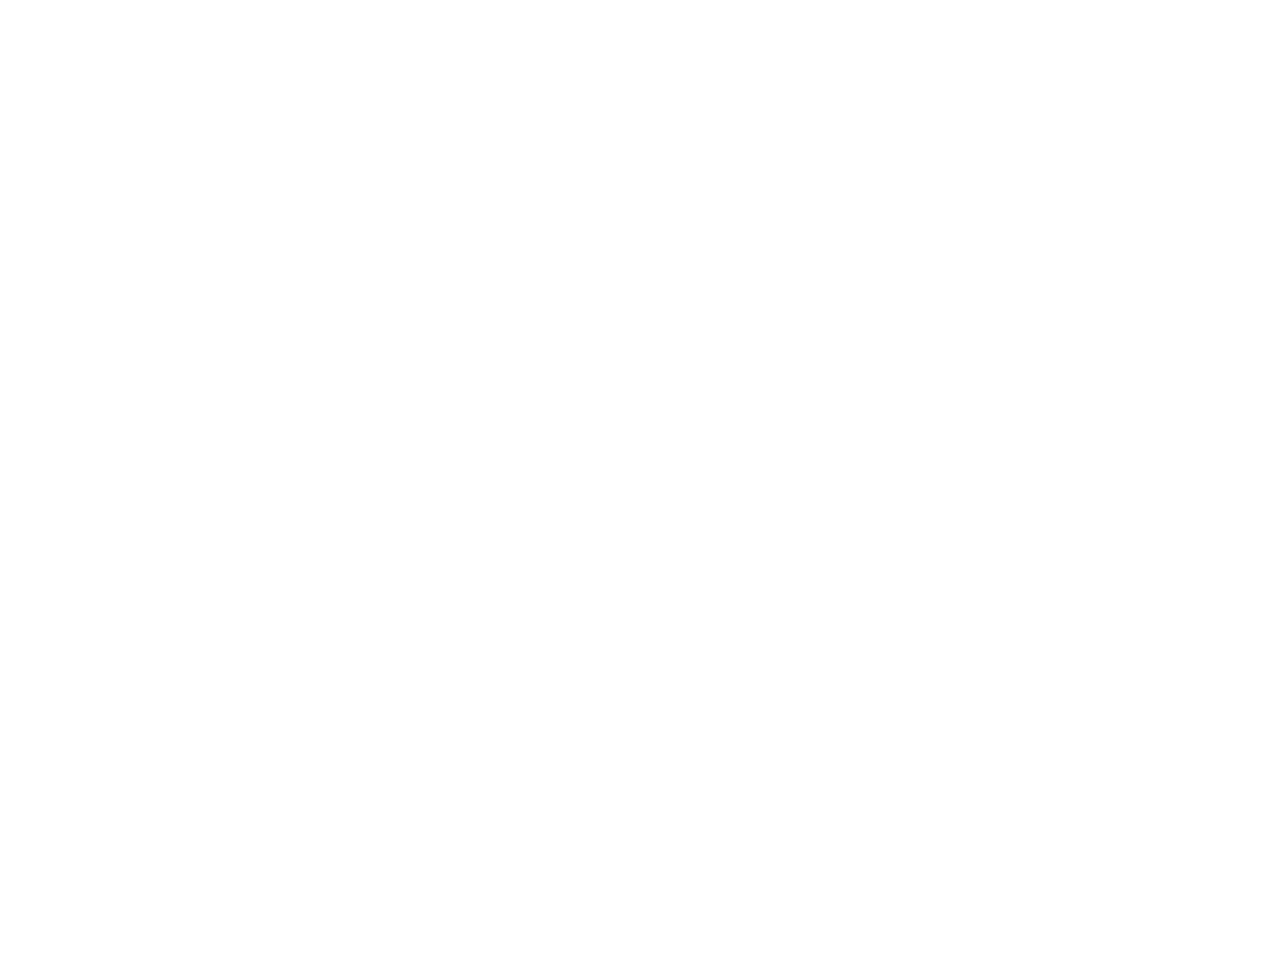 KARLISHA's logo